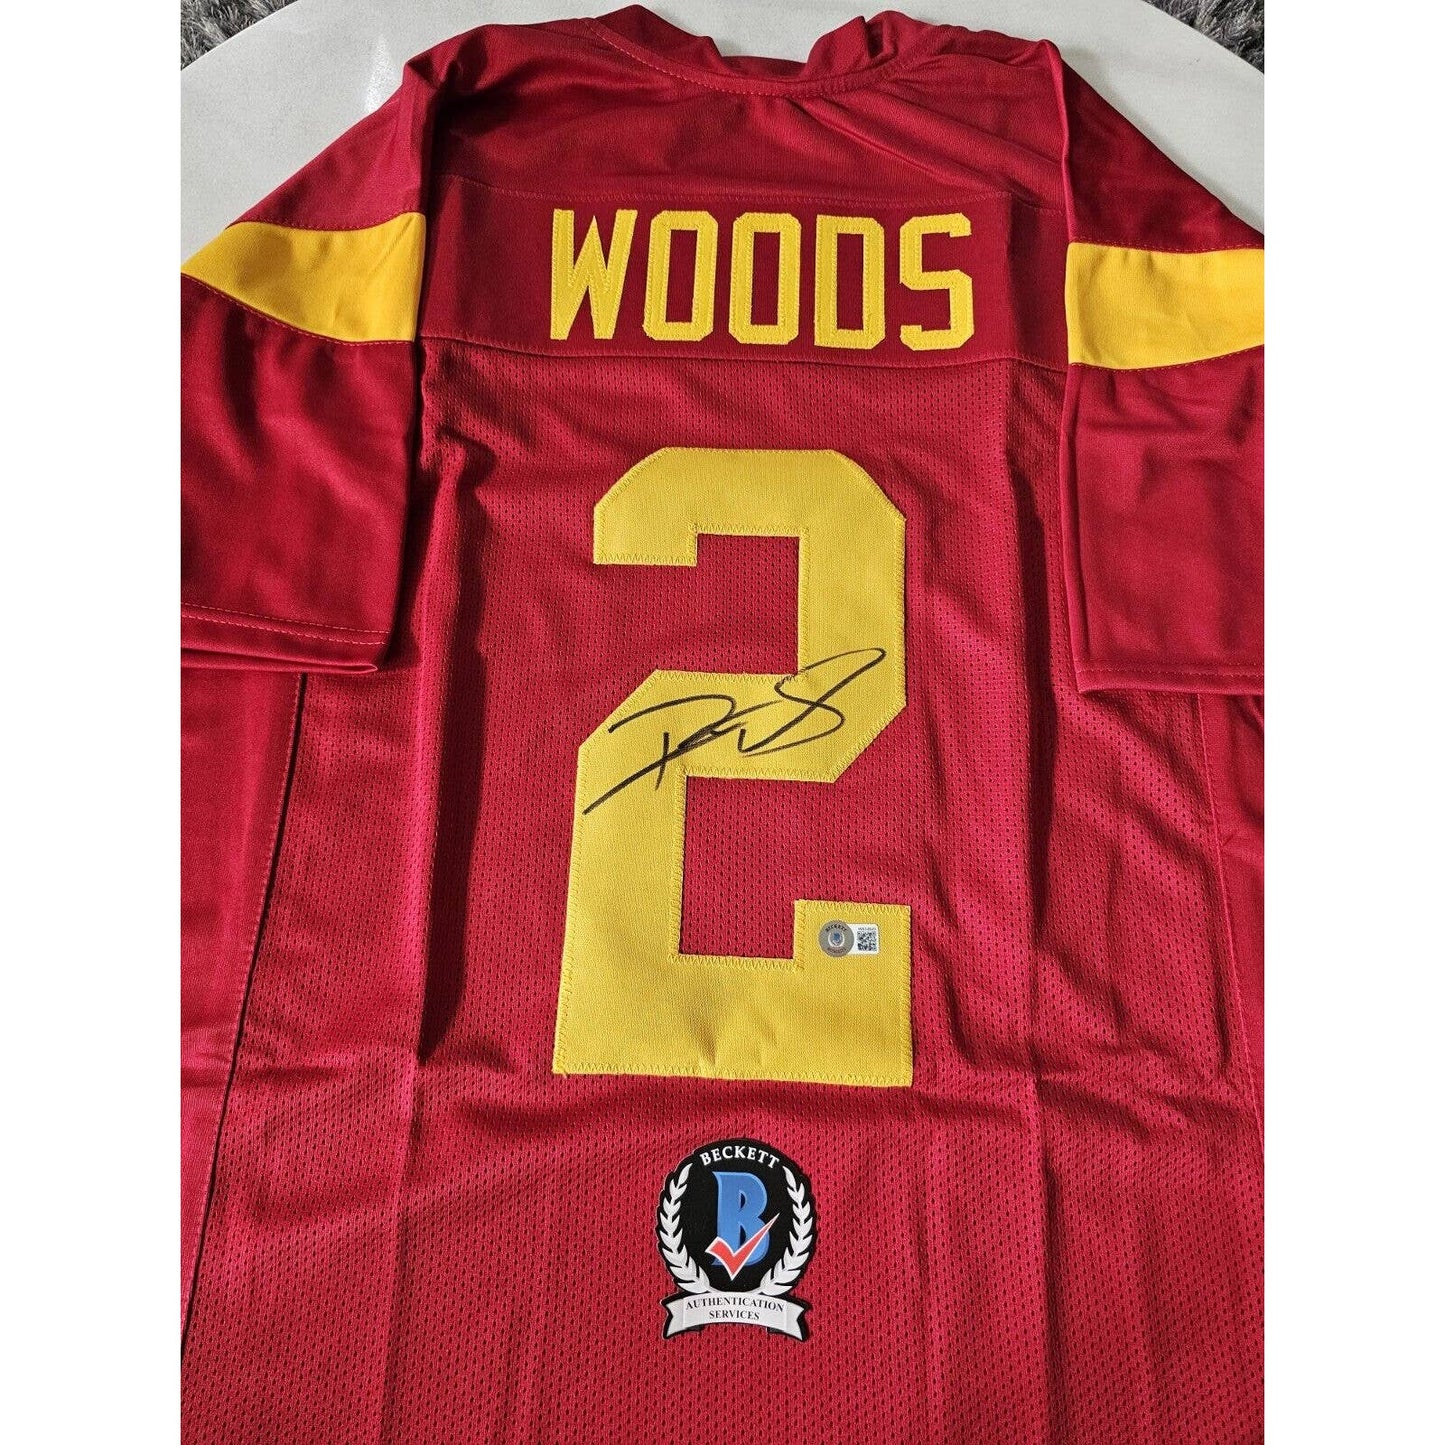 Robert Woods Autographed/Signed Jersey Beckett COA USC Trojans